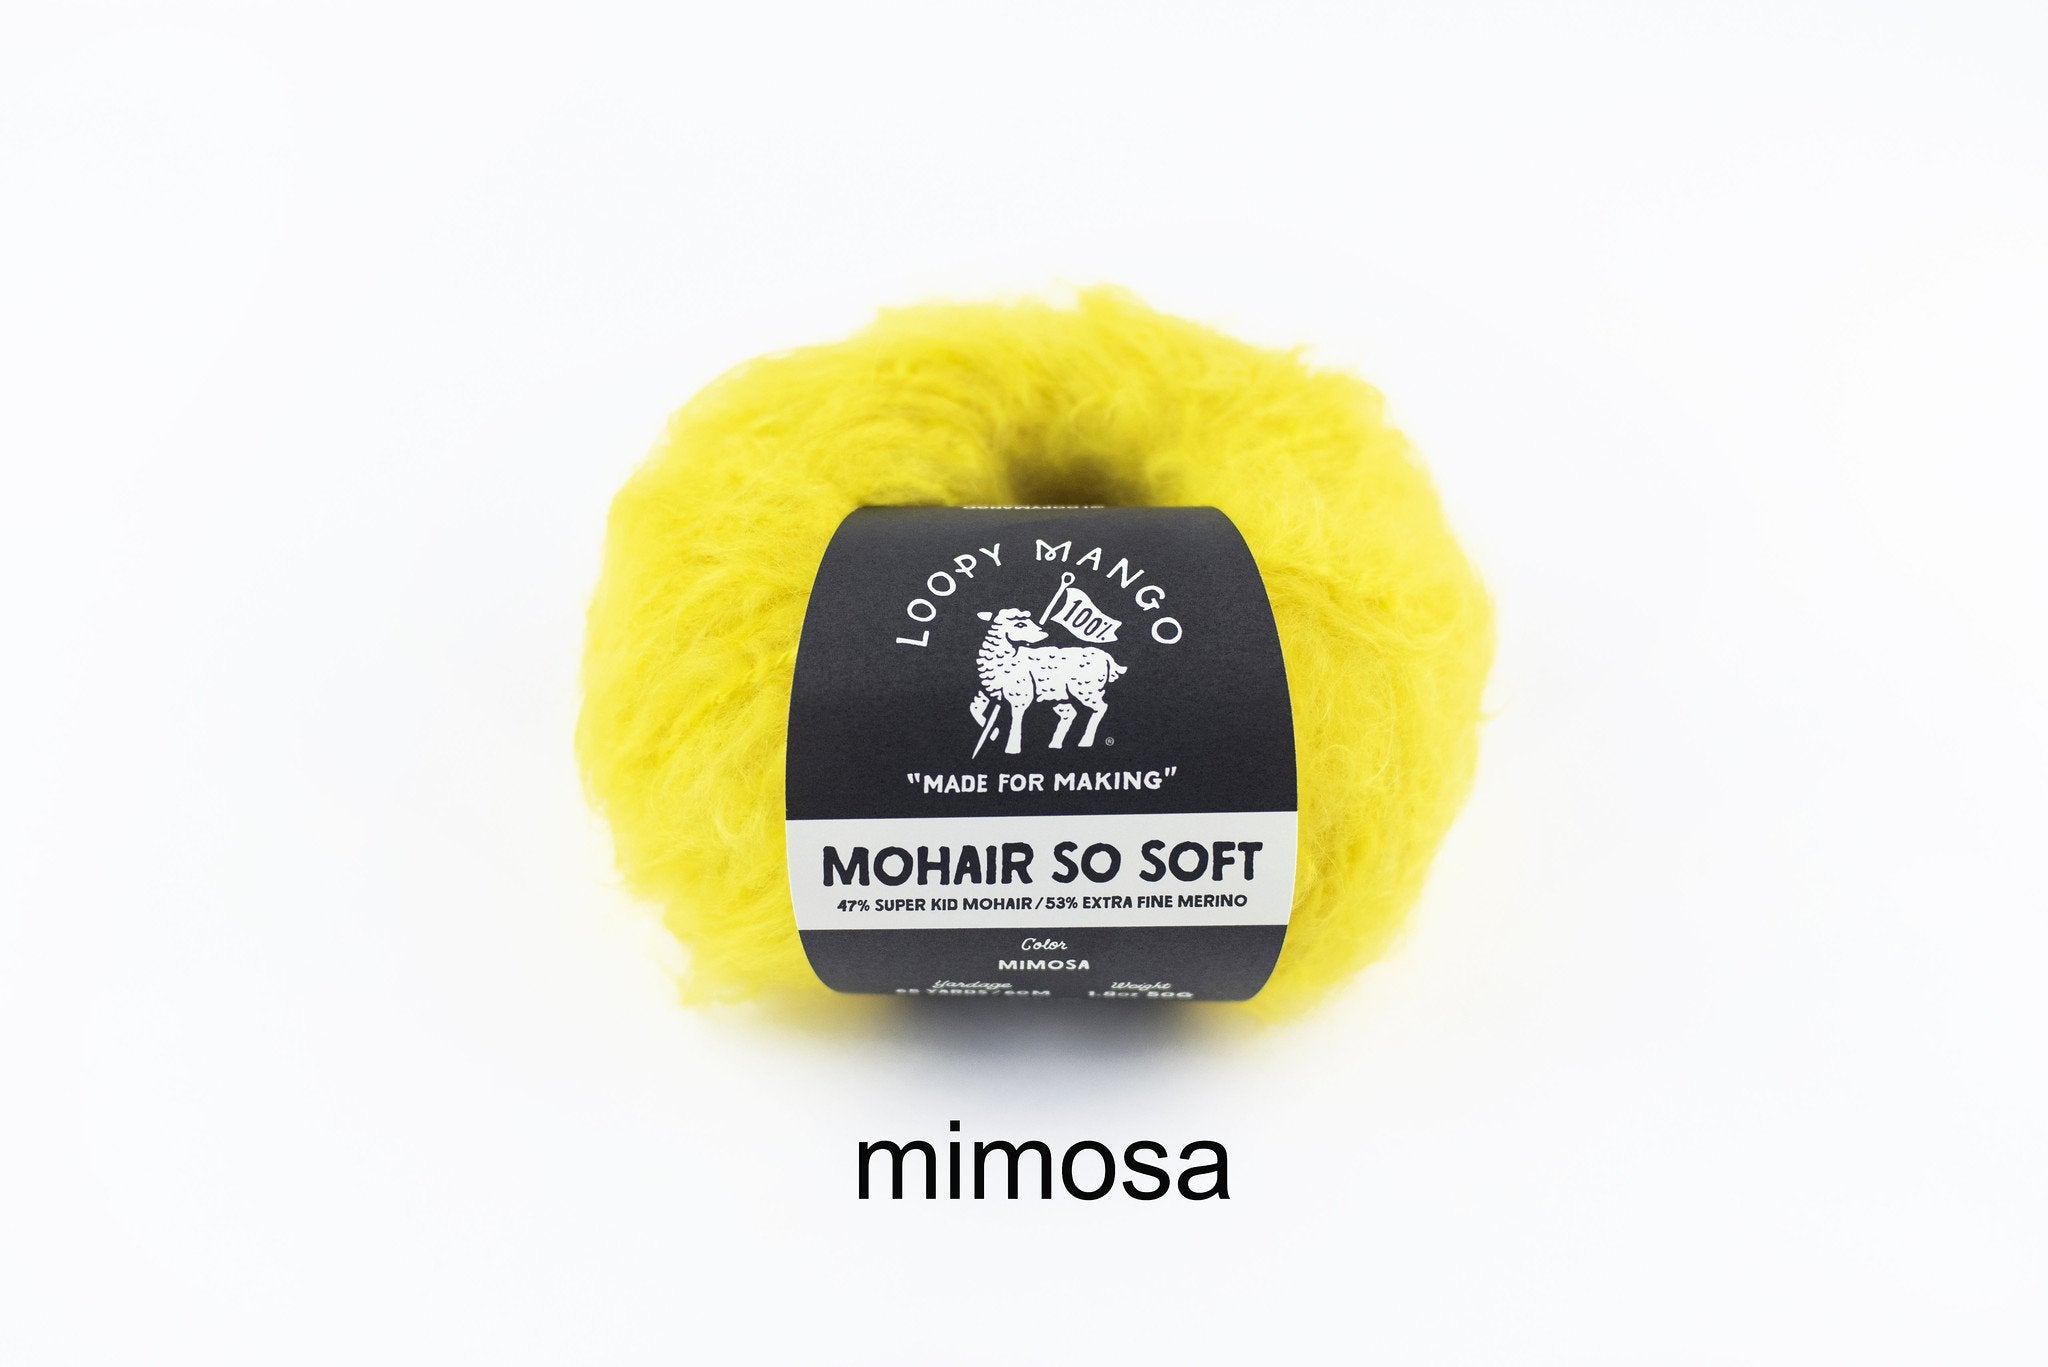 Mimosa_t_1024x1024_2x_db22392f-5b17-407a-b4d4-f8aa0aebbca8.jpg